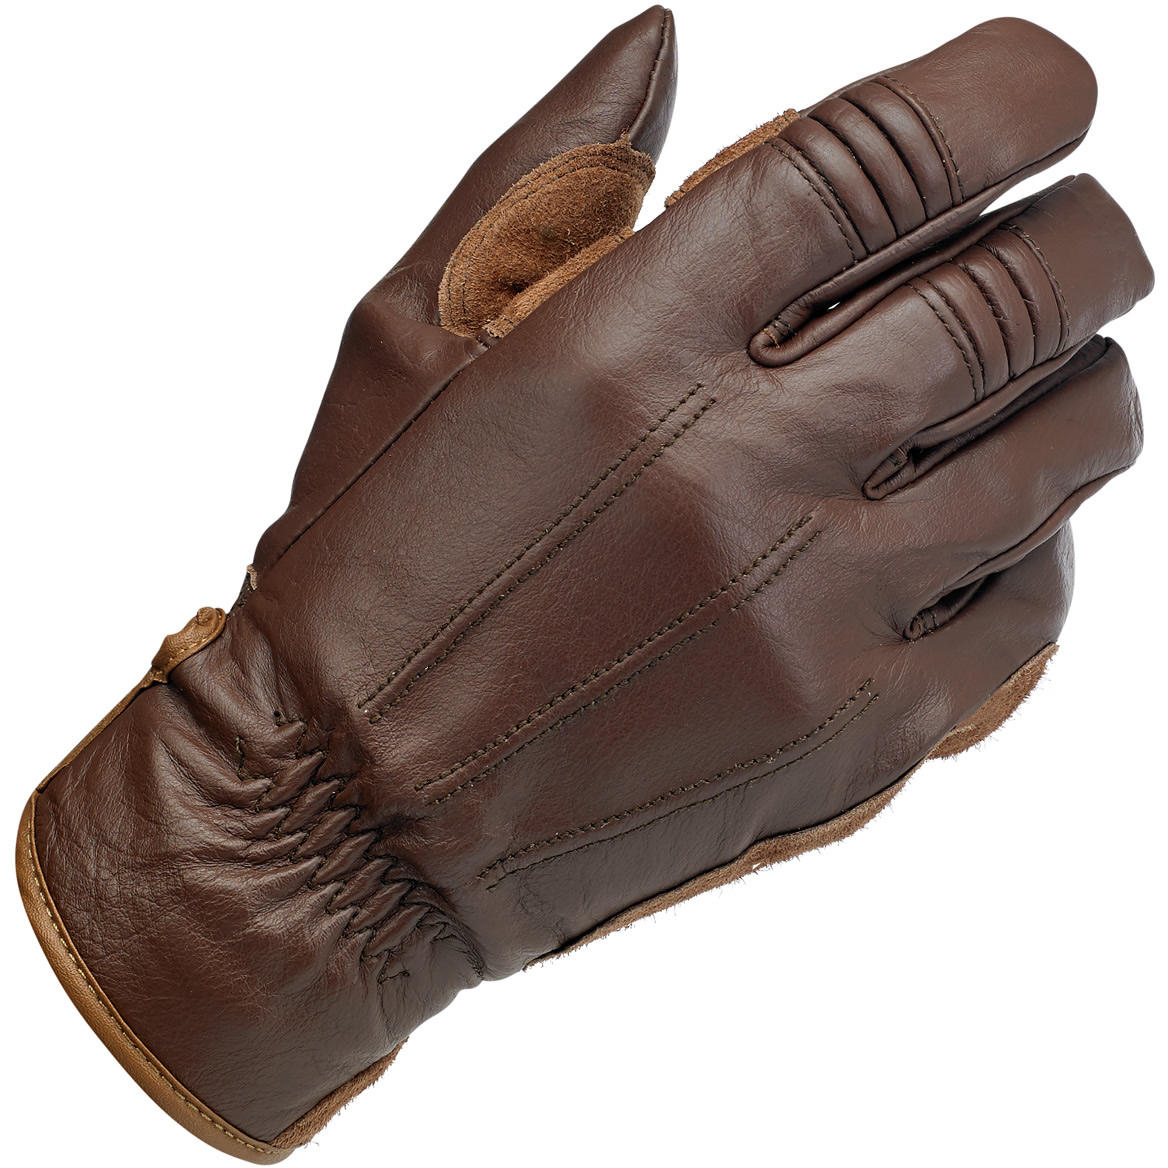 CLOSEOUT Work Gloves Gen 1 - Chocolate/Suede